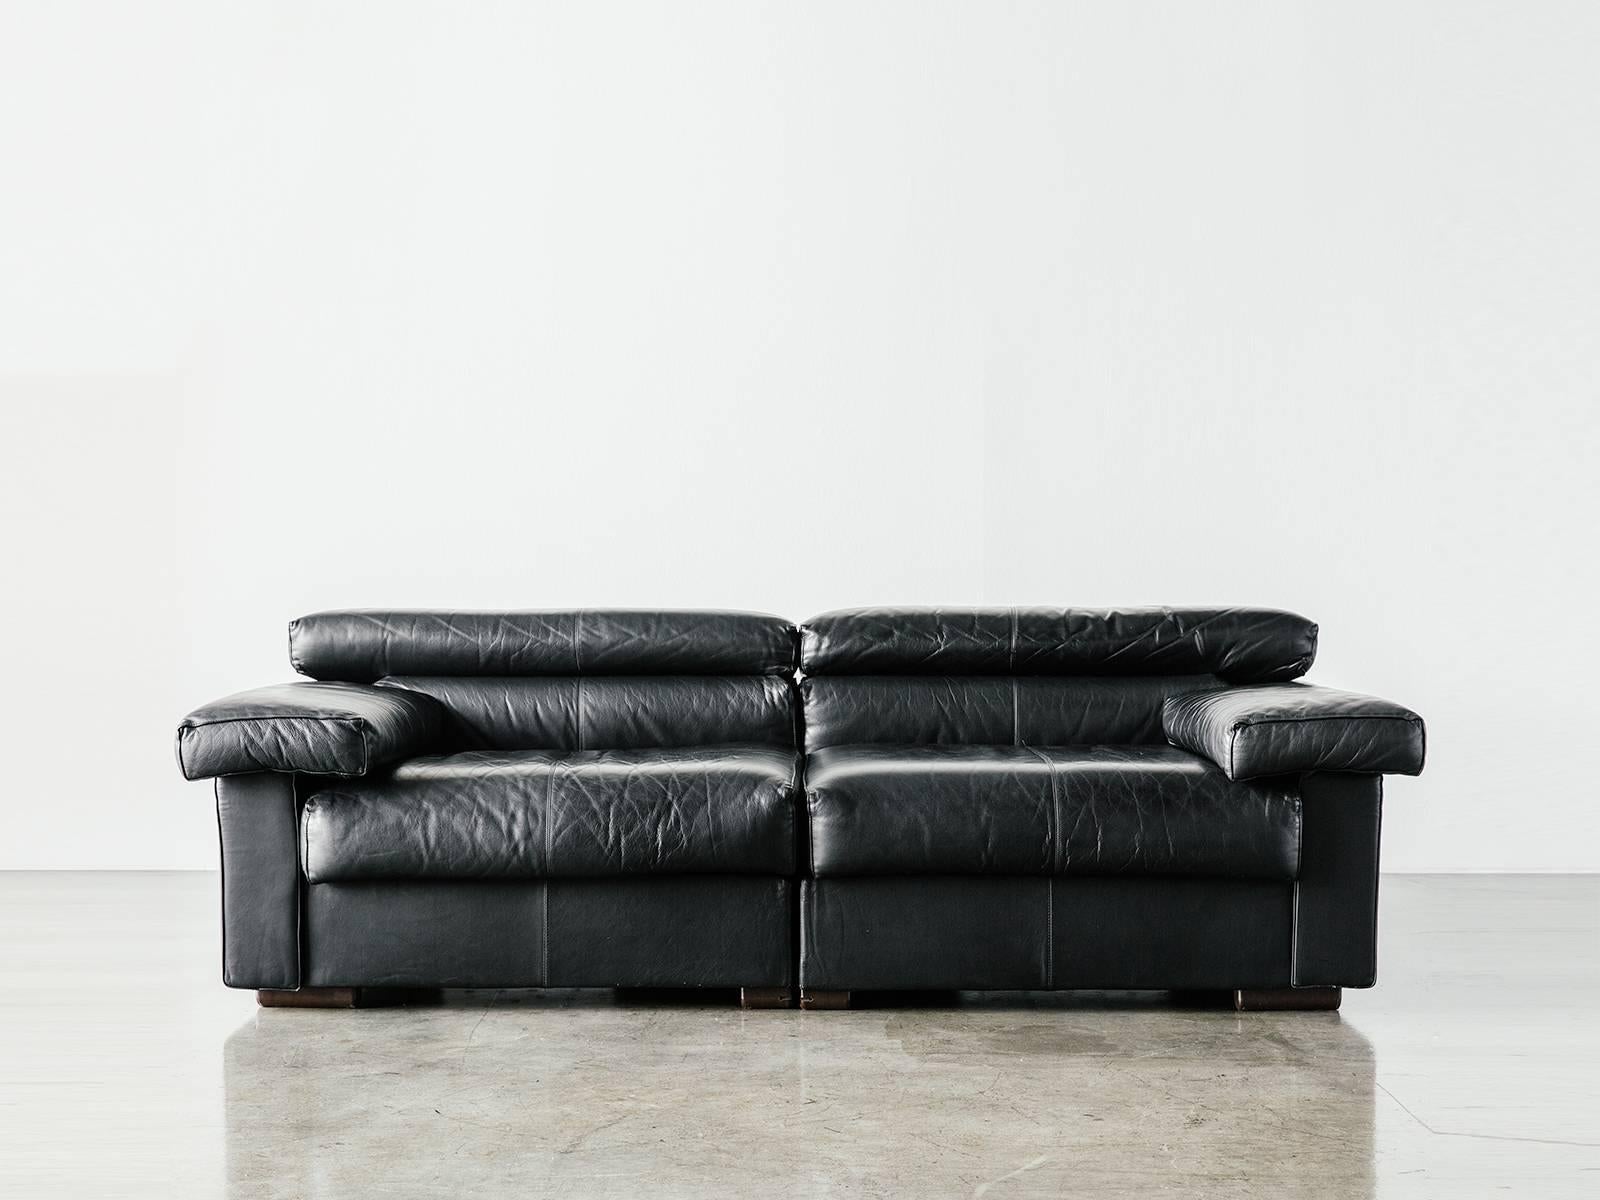 Bequemes und anpassungsfähiges 2-Sitzer-Sectional-Sofa. Das Sofa leitet sich von der Erkundung des neuen, legereren häuslichen Umfelds durch die Scarpas in den frühen 70er Jahren ab. Das Ergebnis ist ein Design, das den Kontrast zwischen der weichen